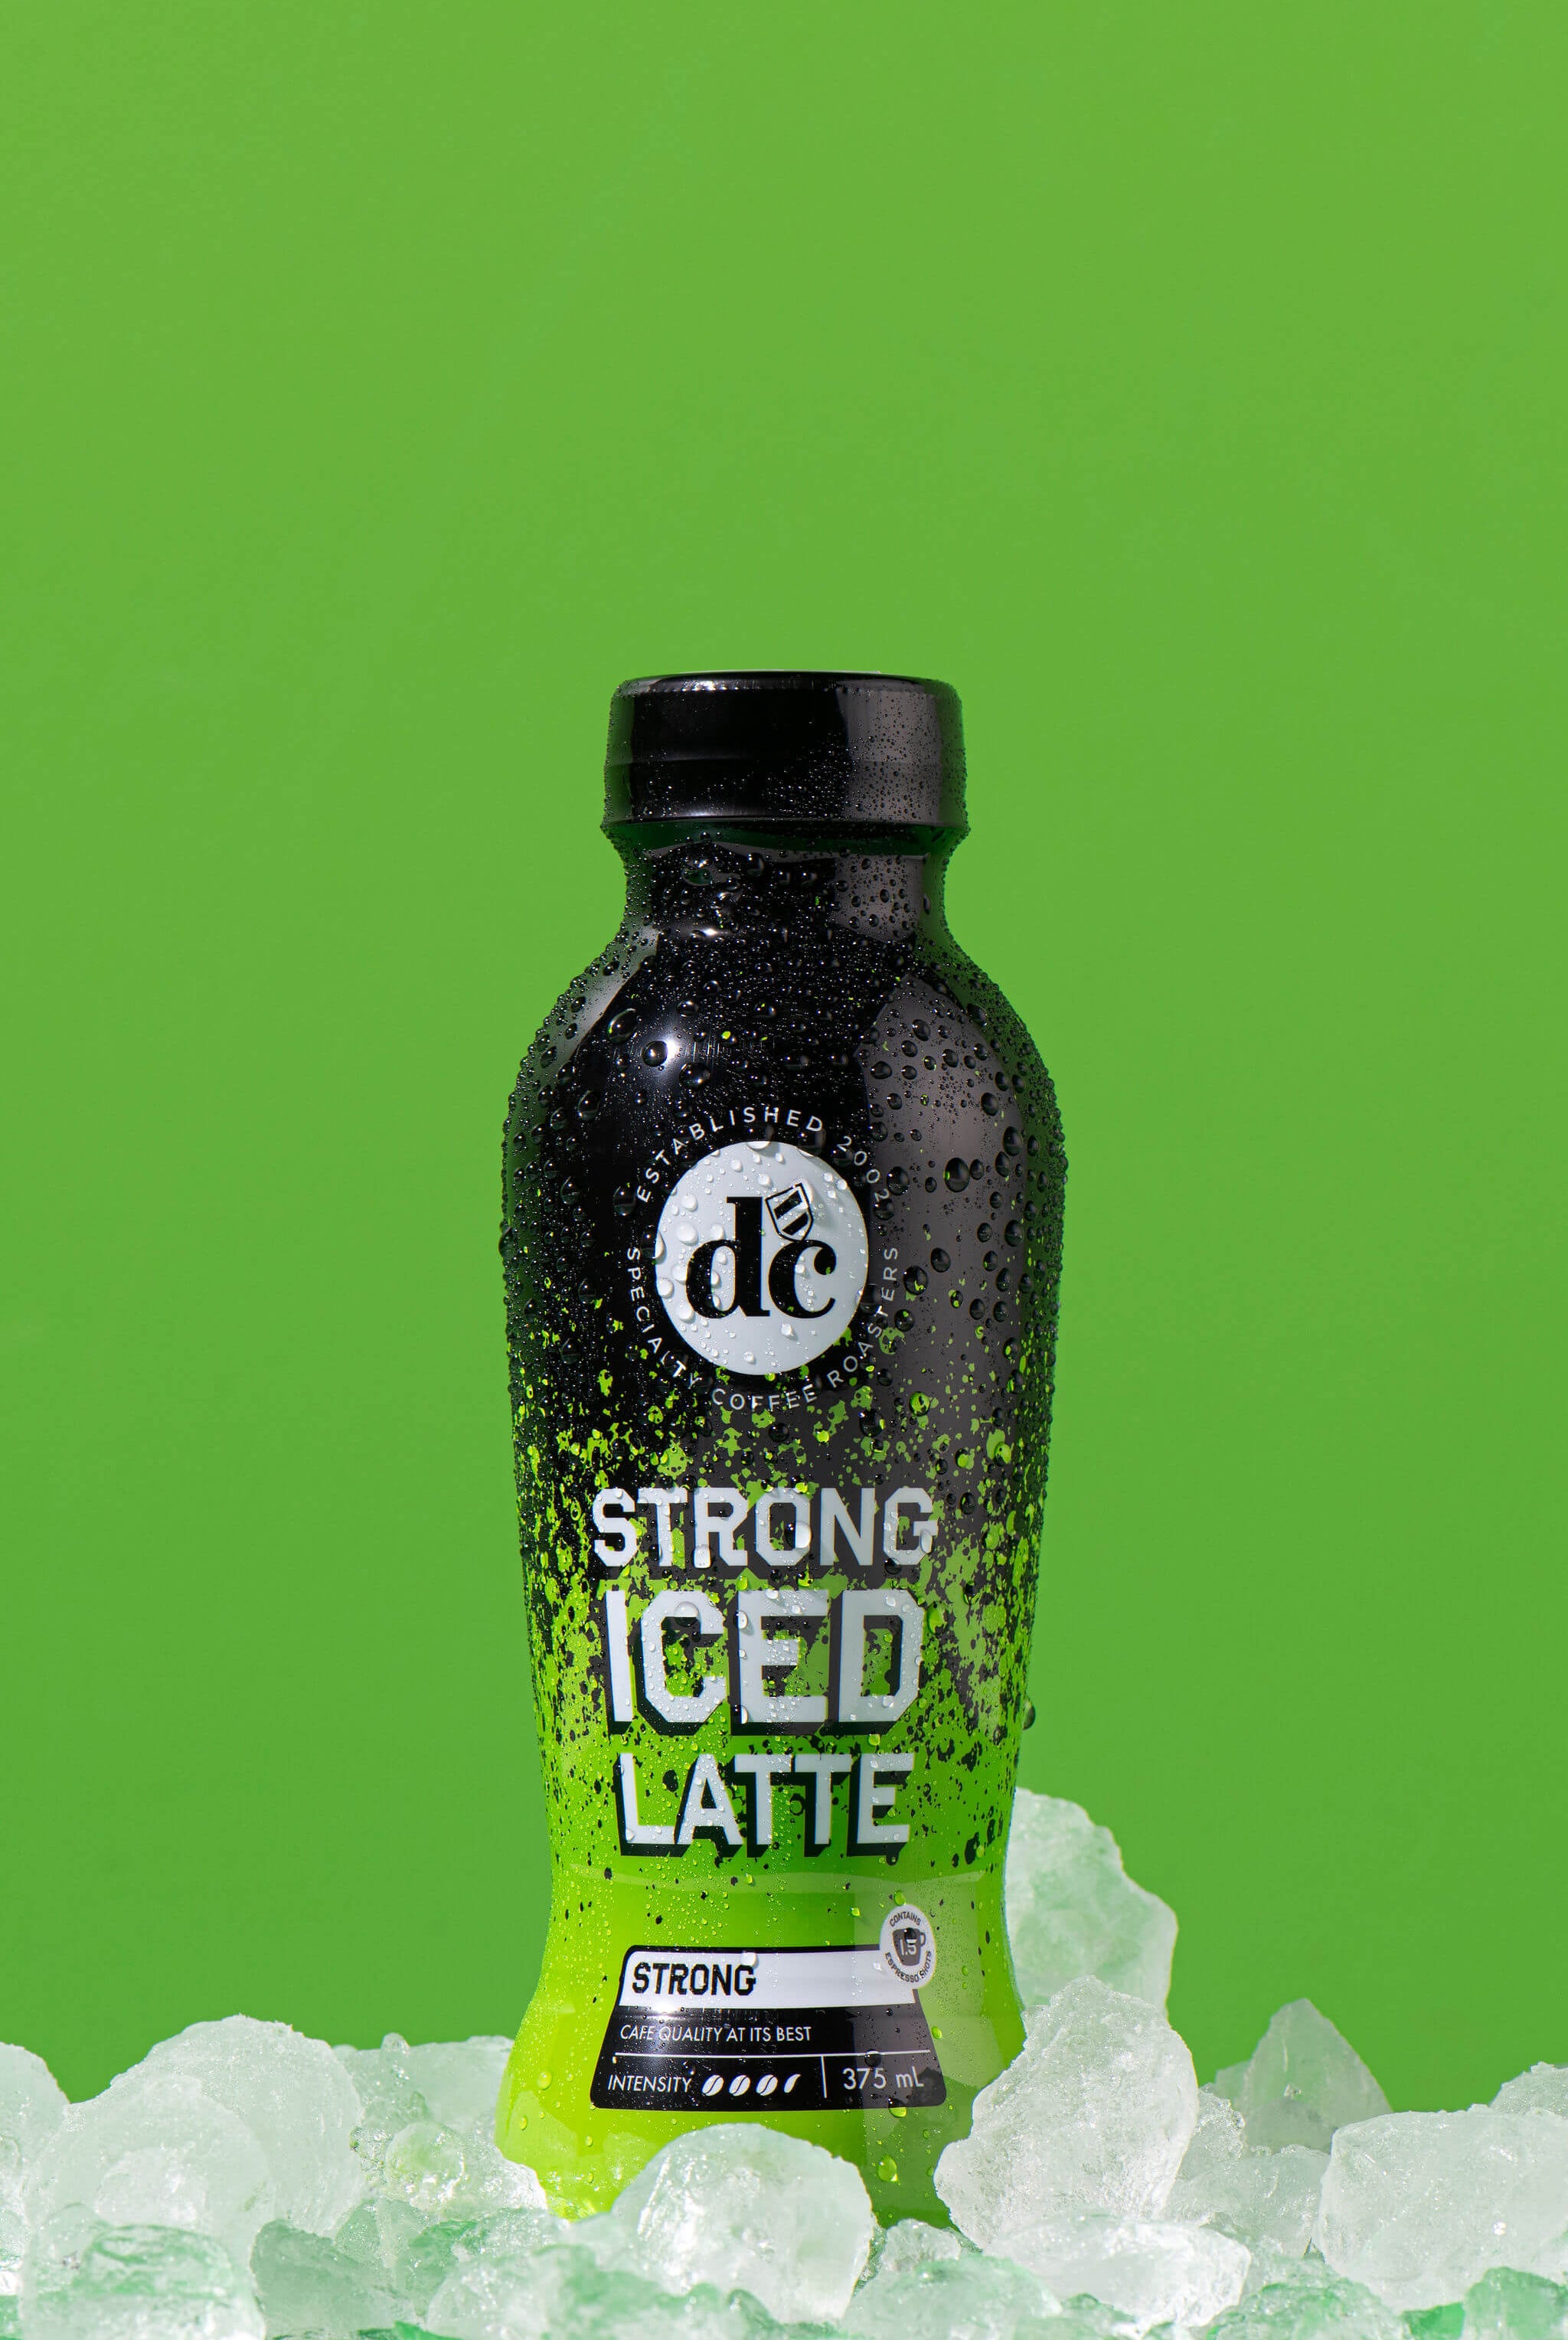 Strong Iced Latte Bottle